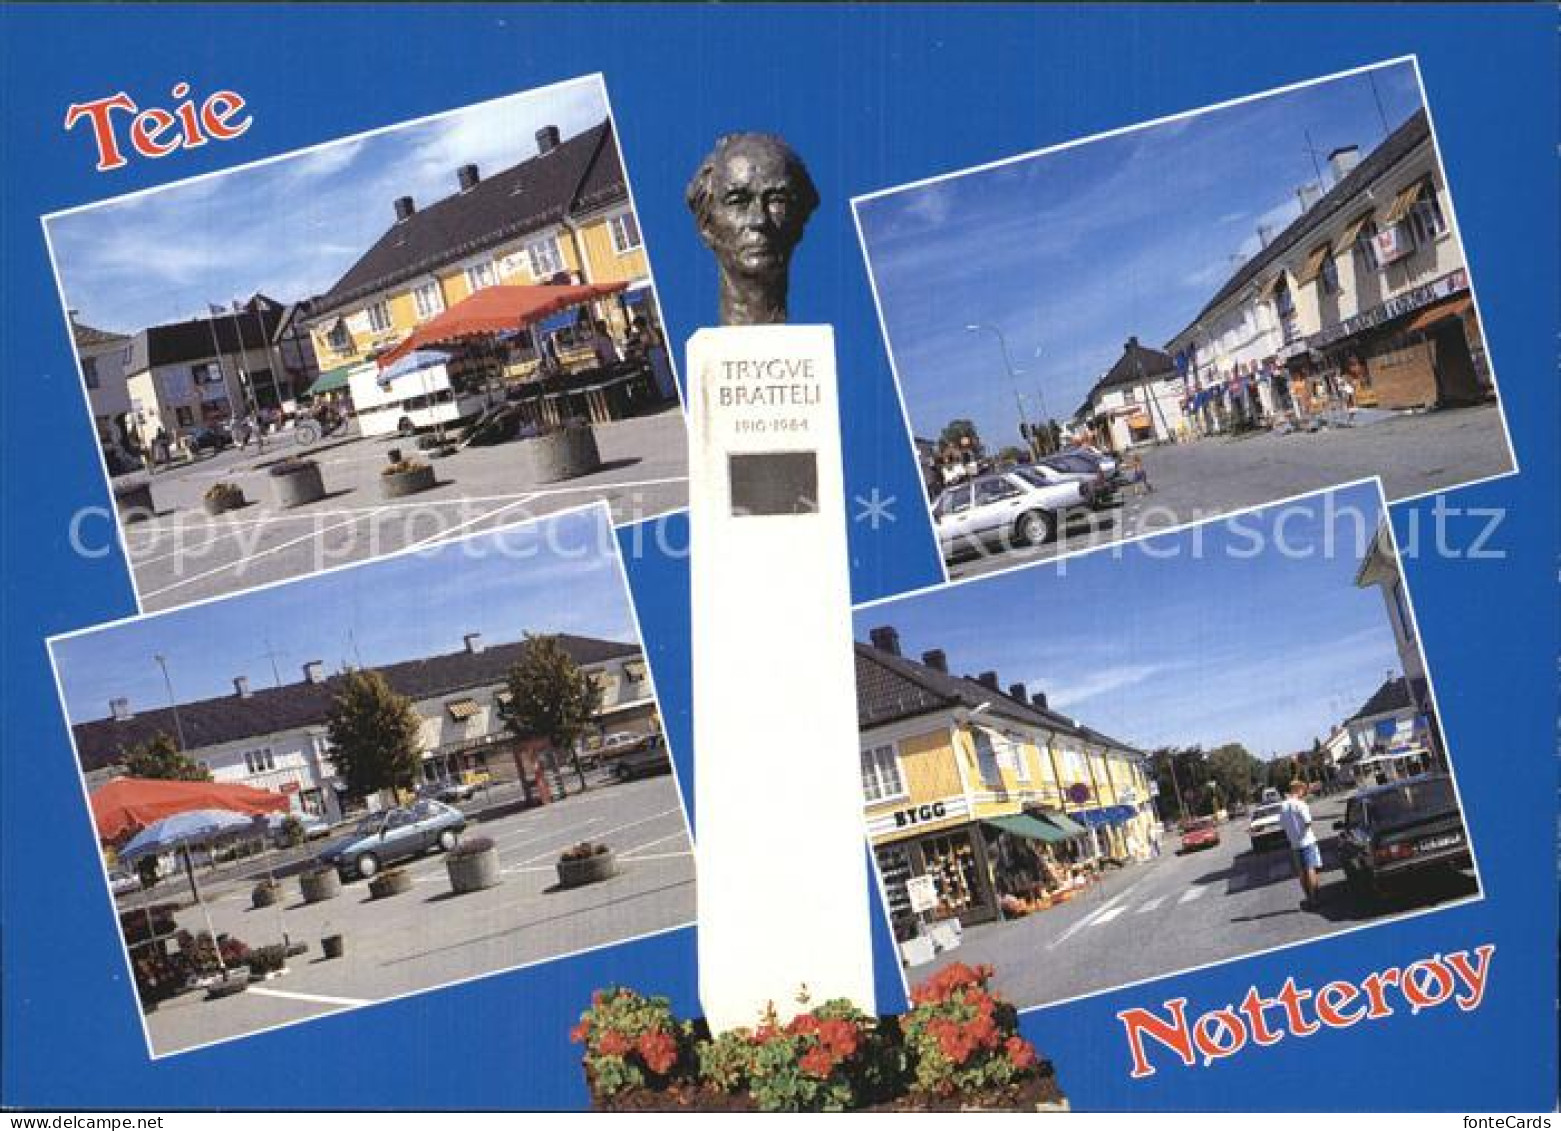 72576483 Notteroy Motiver Fra Tettstedet Monument Denkmal Bueste Notteroy - Norvège